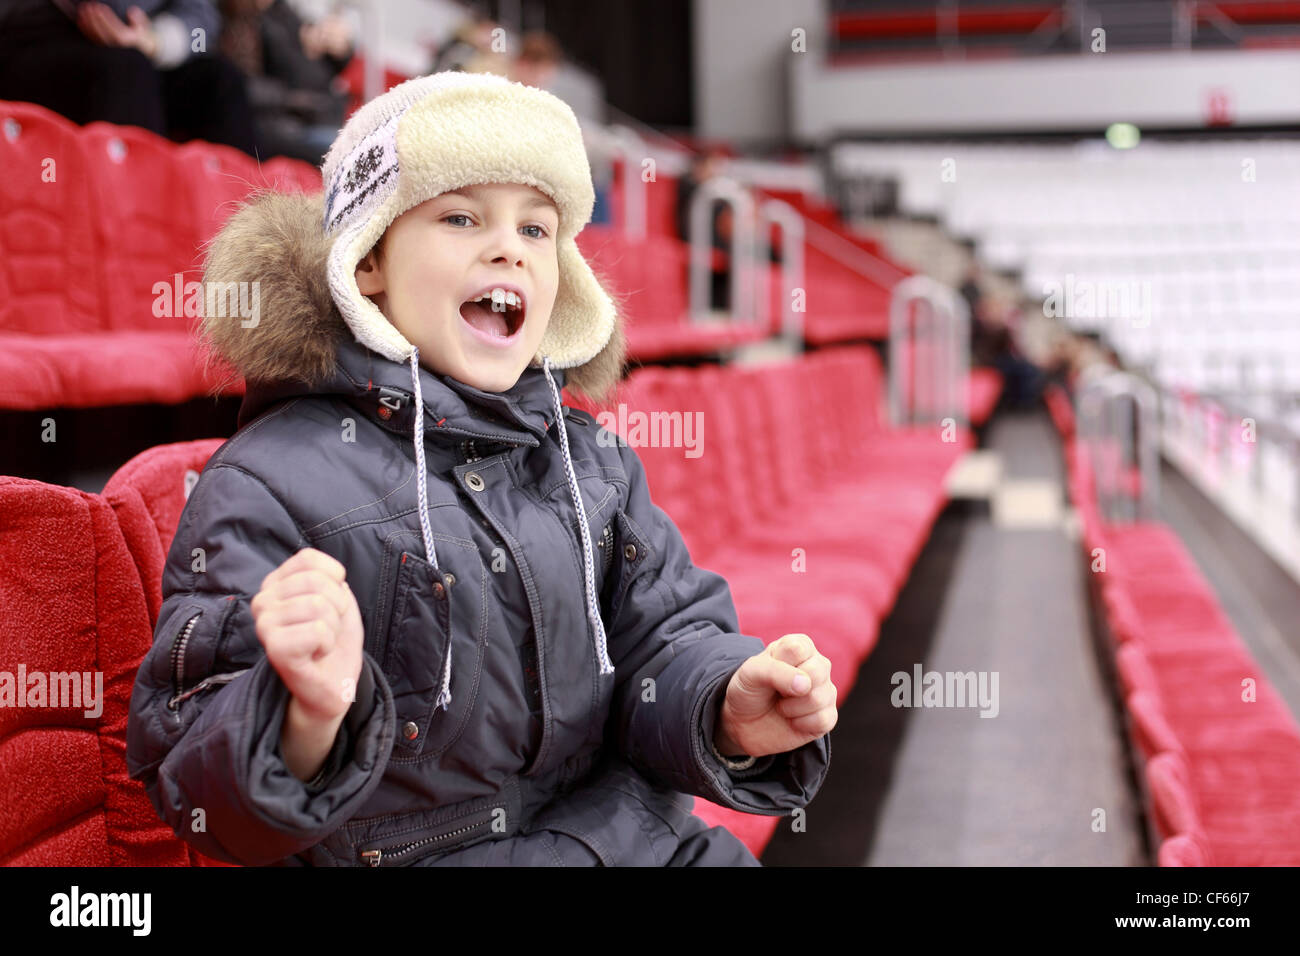 Junge schreit laut auf Hockey-match Stockfoto